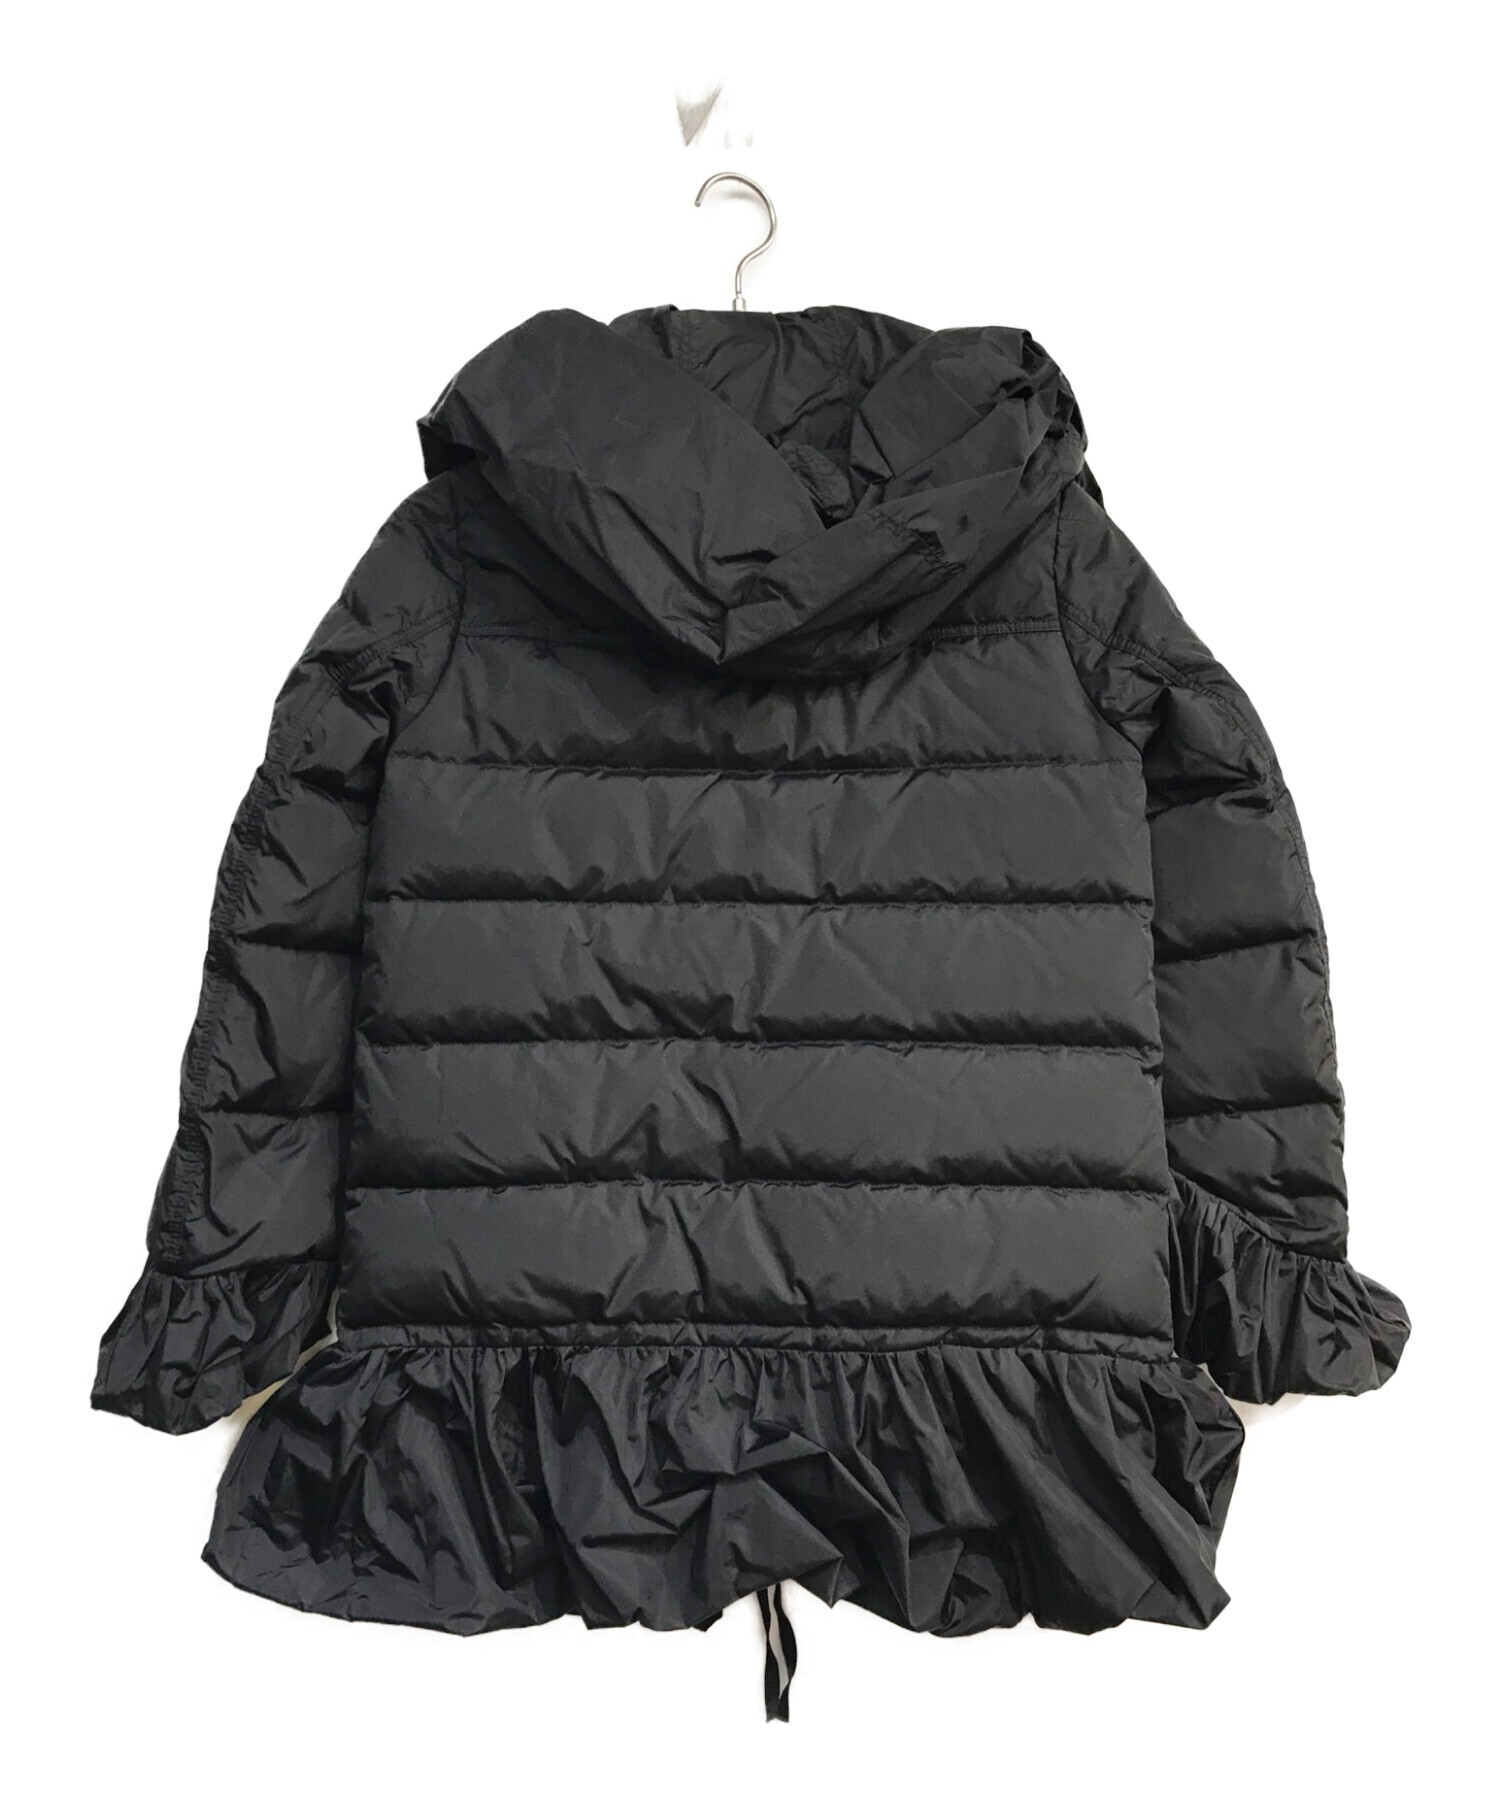 【美品】MONCLER ダウンジャケット SERRE ブラック サイズ0 S袖丈約61cm